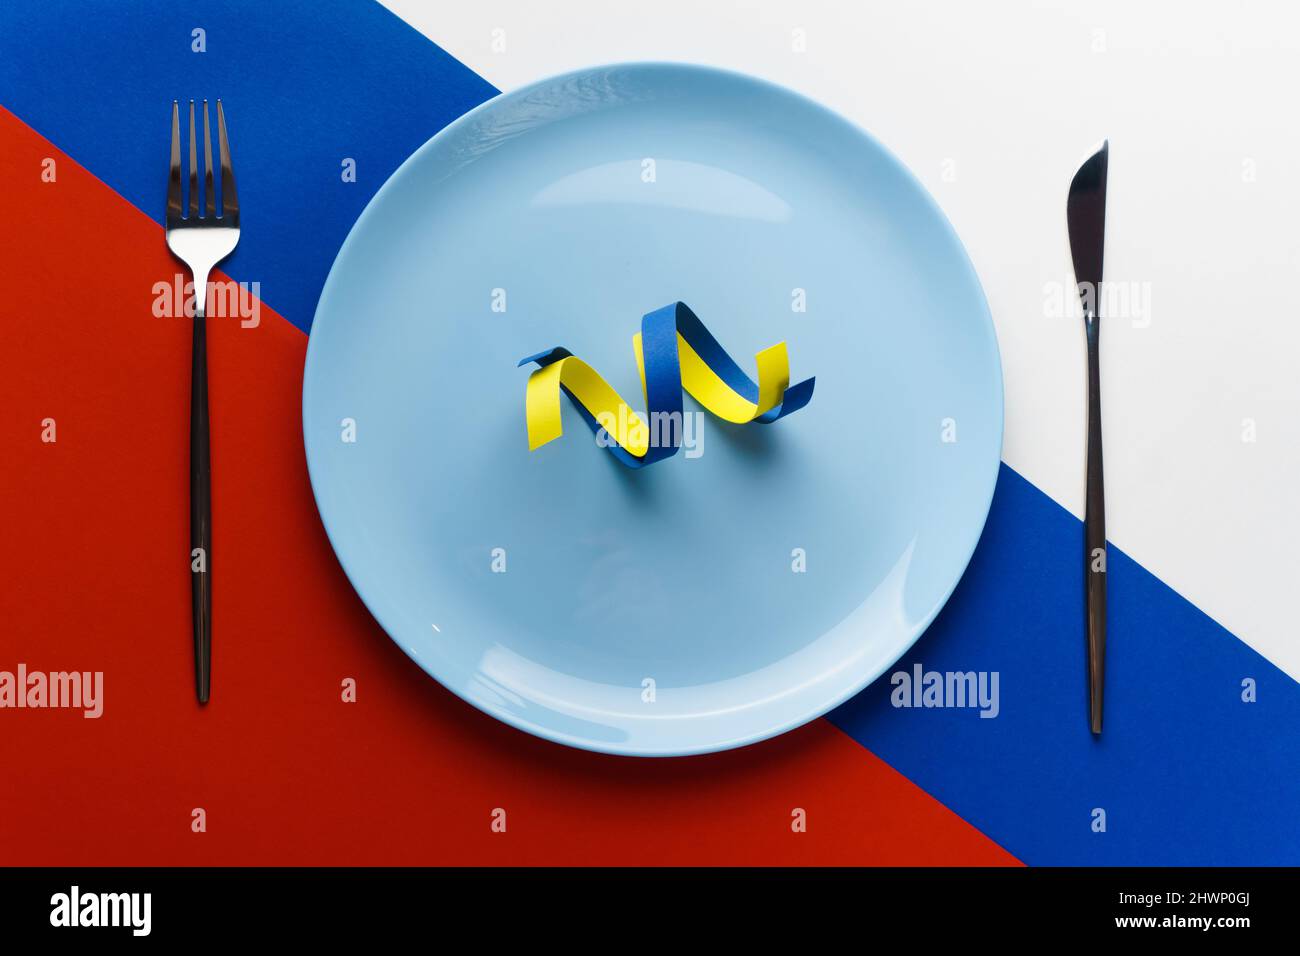 Nastri blu e giallo come simbolo dell'Ucraina sulla bandiera della Russia. La Russia vuole mangiare l'Ucraina Foto Stock